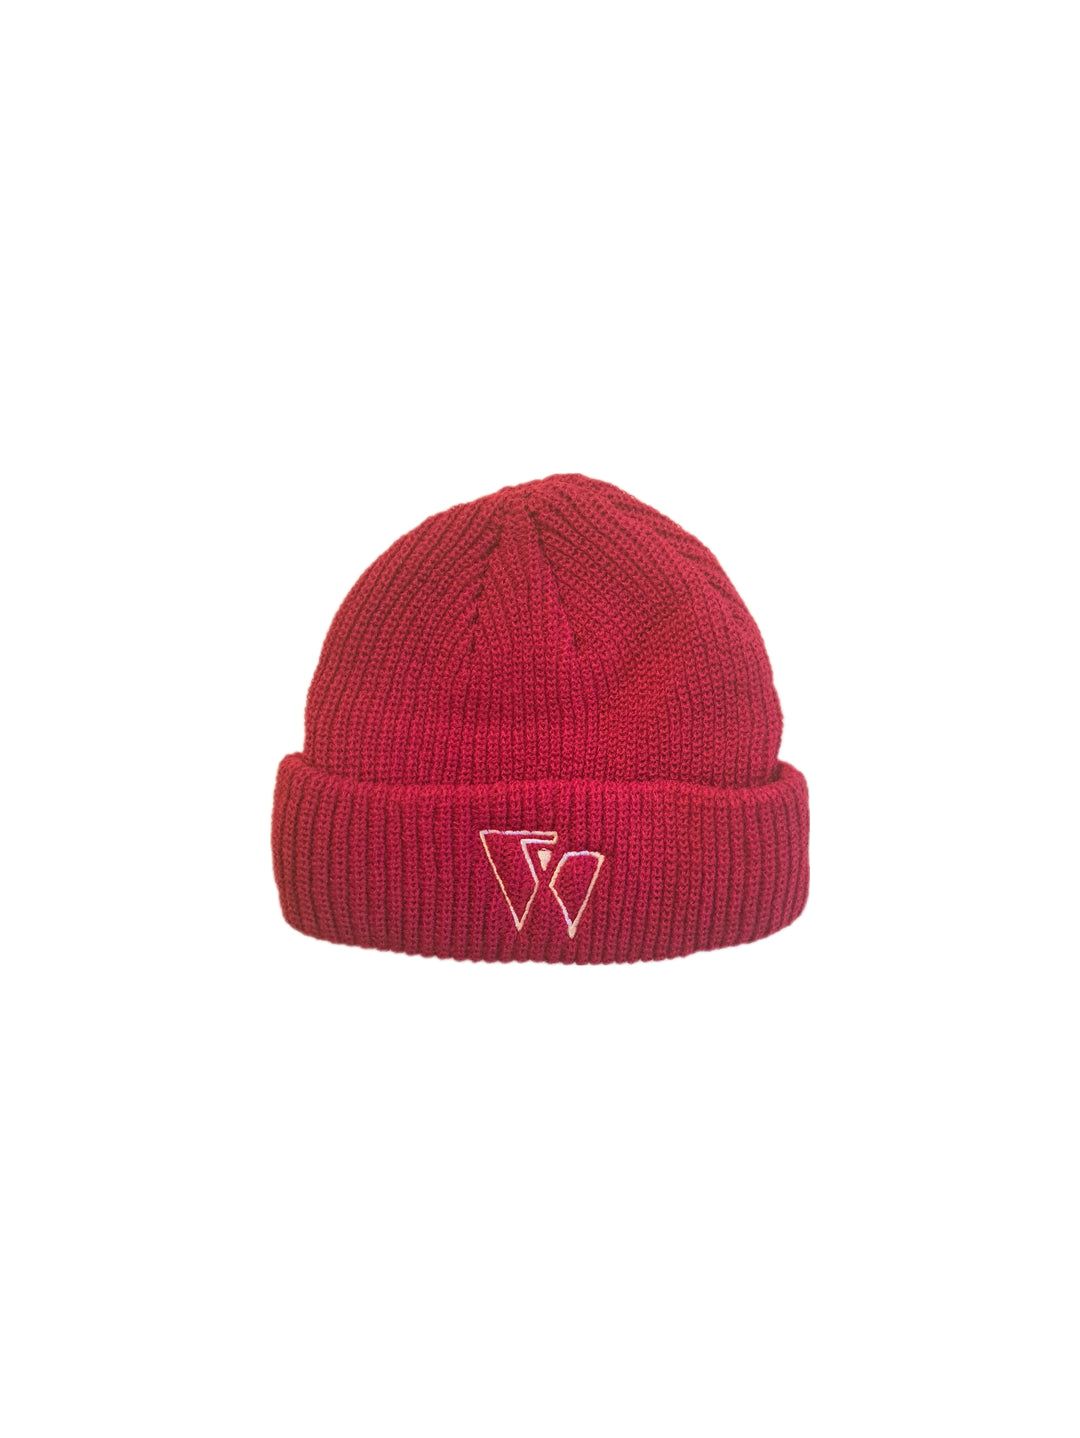 Beanie Hat (Red)